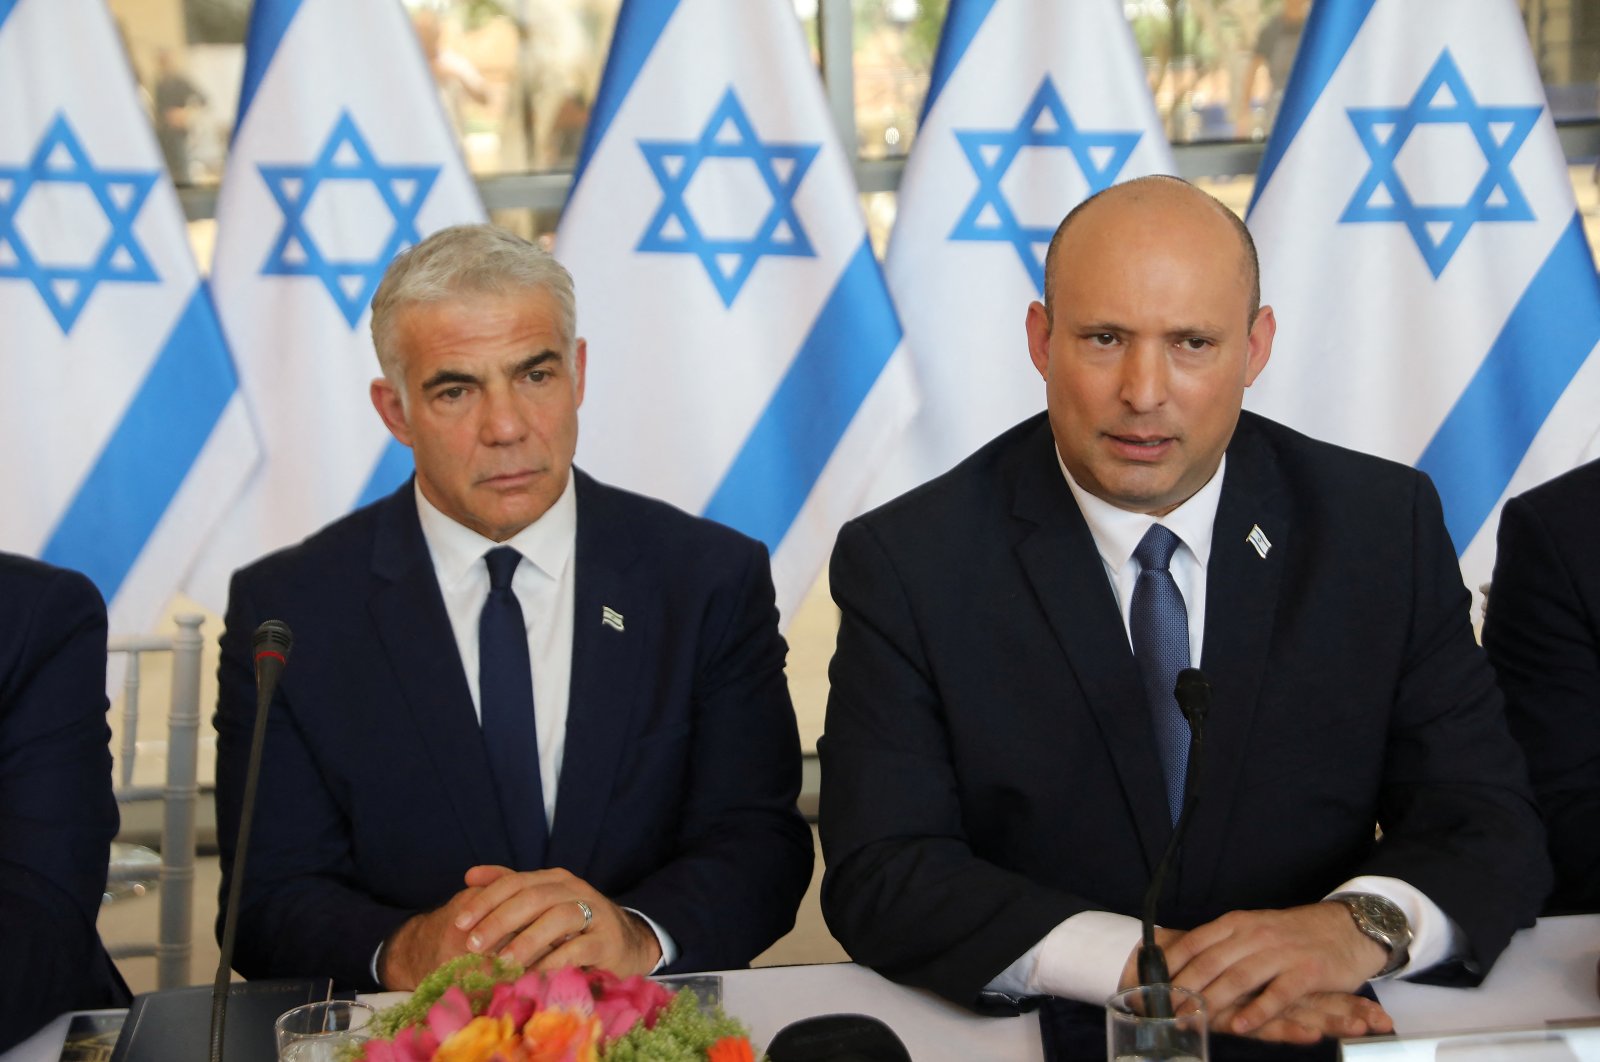 Koalisi Israel bubar, Menlu Lapid jadi PM